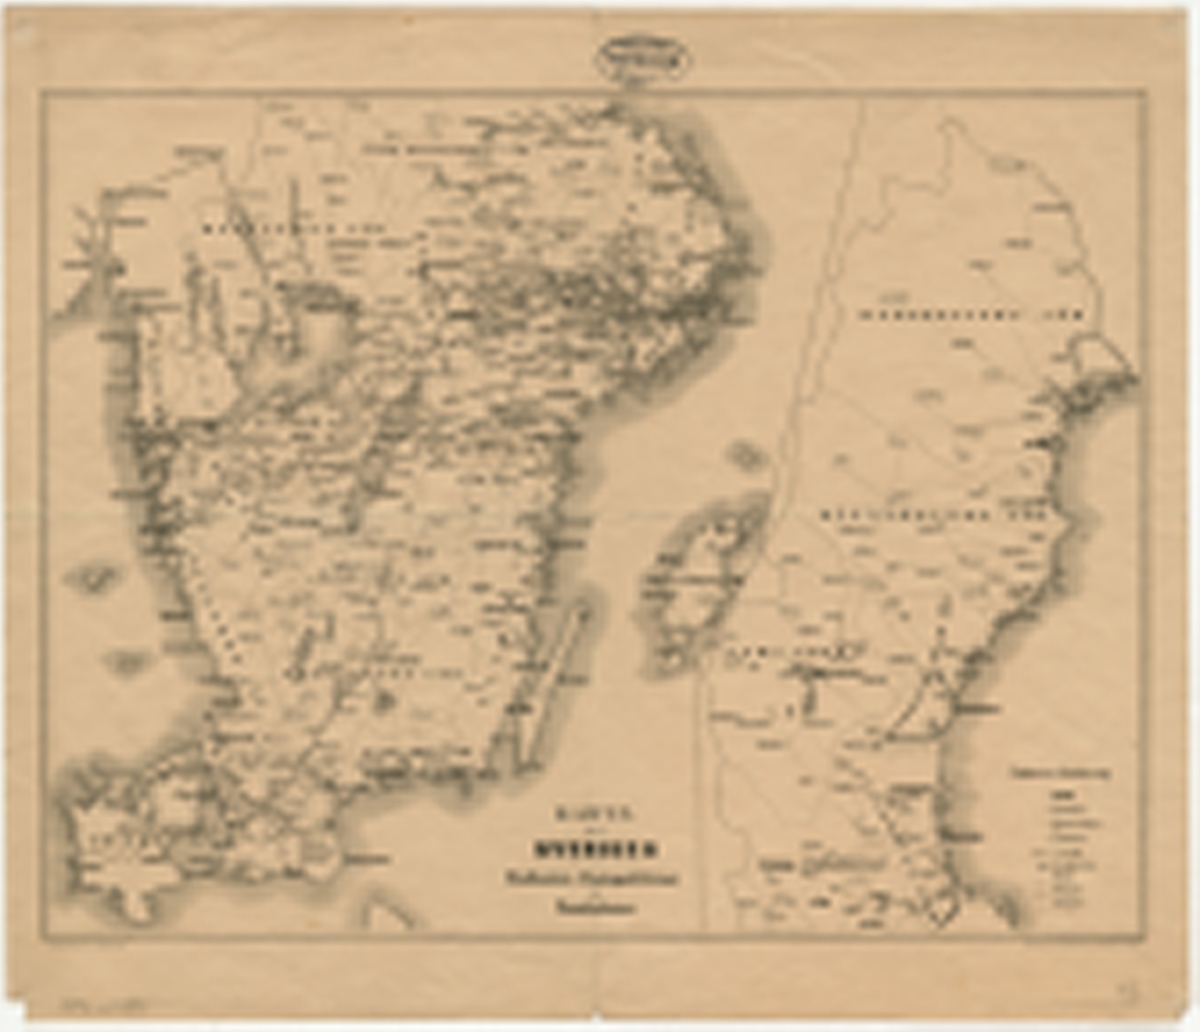 Postkarta över Sverige, som visar landets postkontor,
postexpeditioner och poststationer, från 1860.